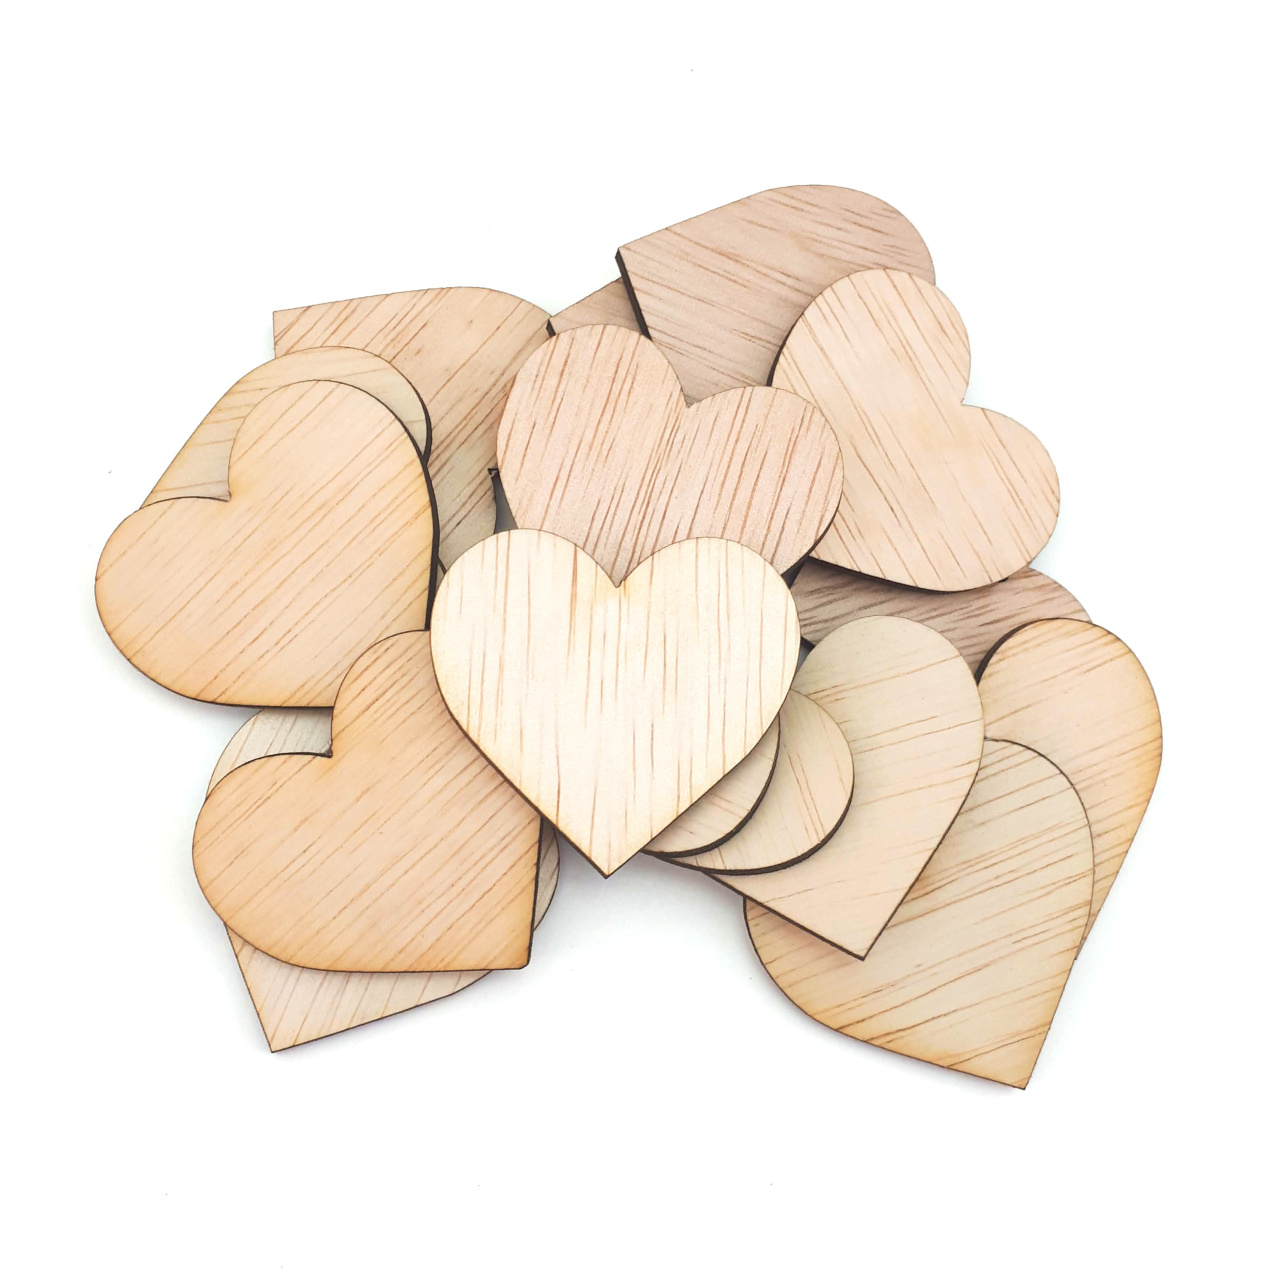 Inimă, 7,5×7 cm, placaj lemn natur